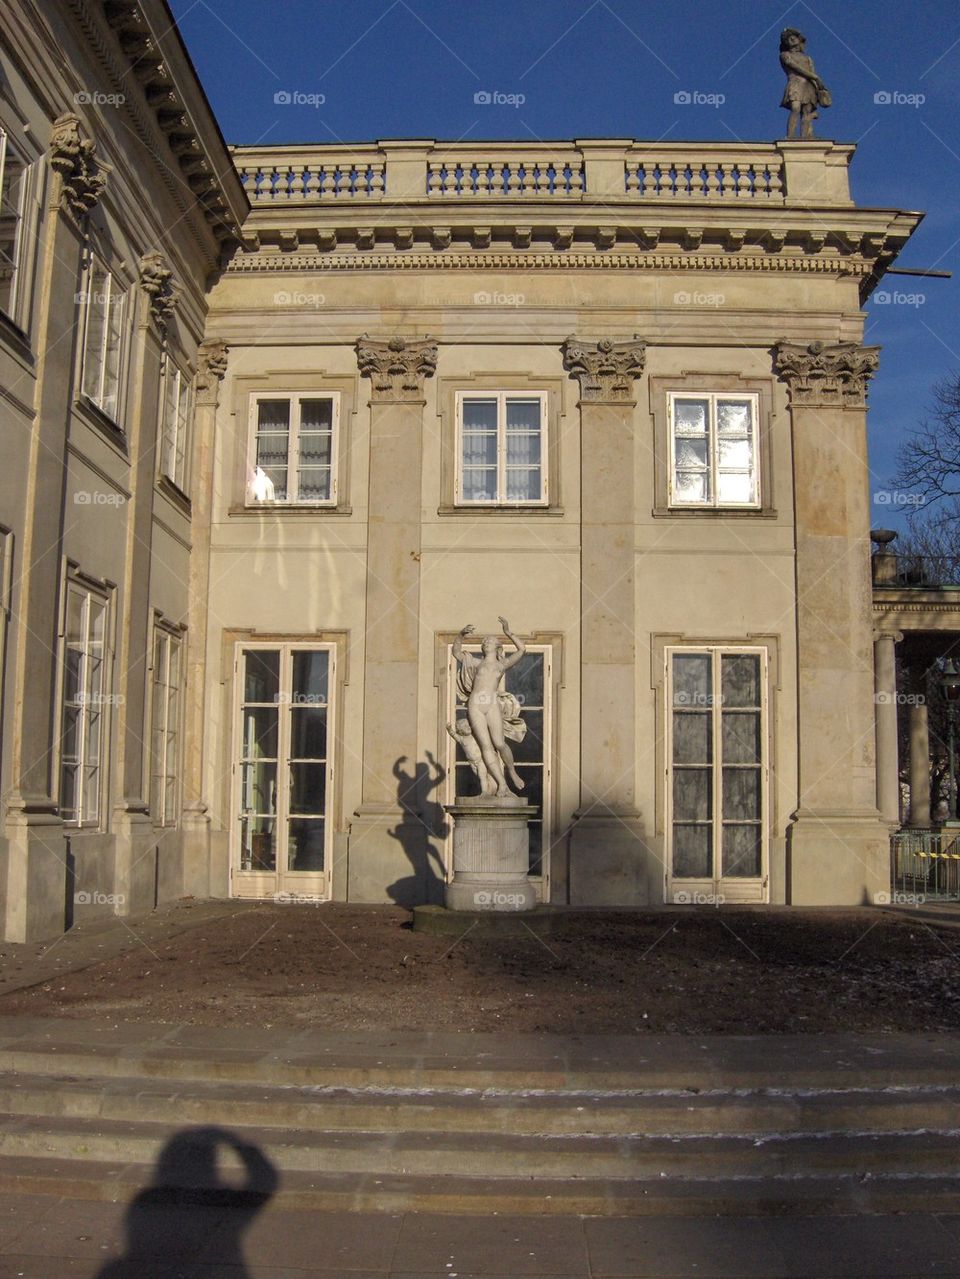 Inset of Polish Palace